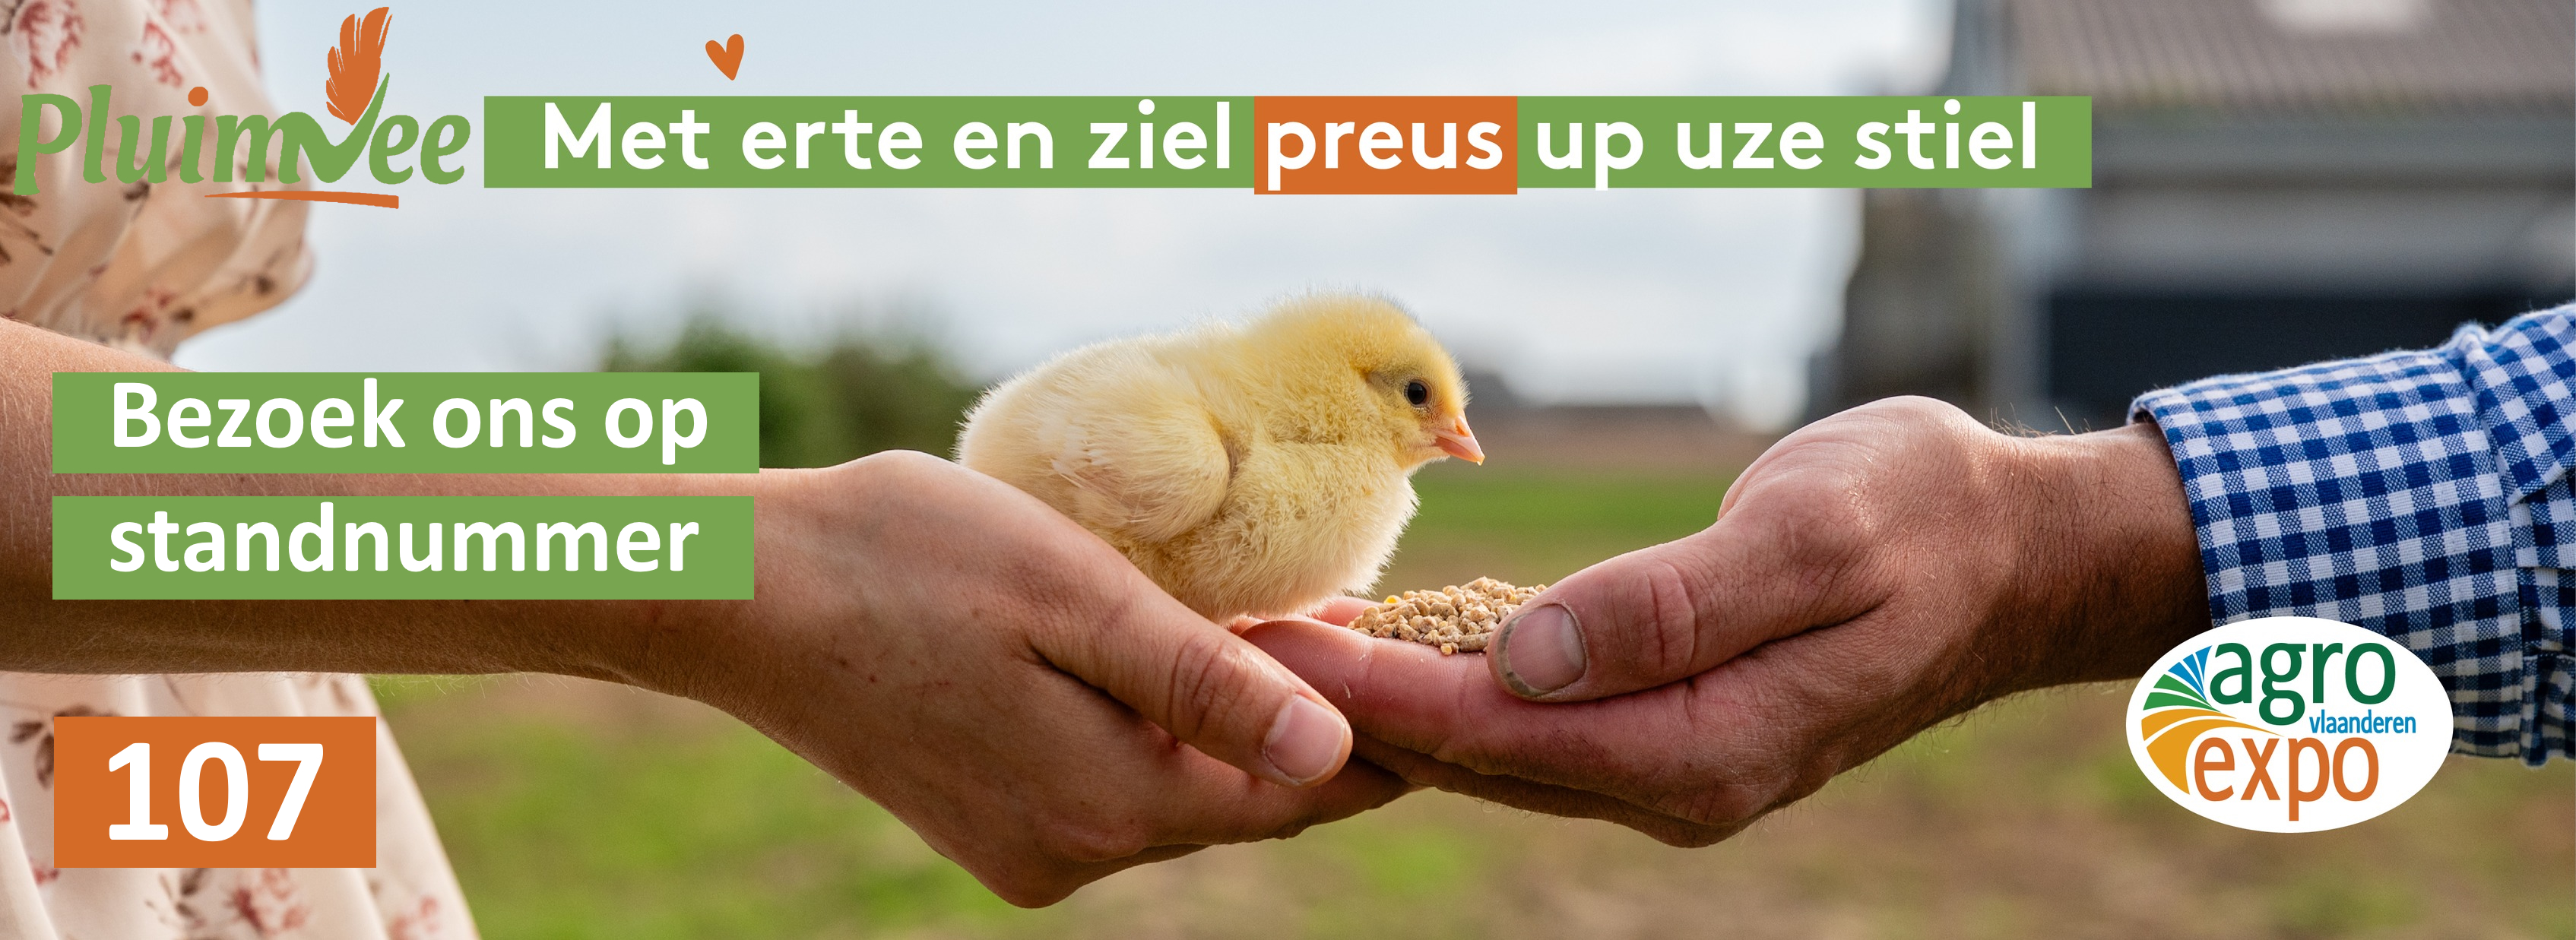 Landsbond Pluimvee West-Vlaanderen tekent present op Agro Expo - Pluimvee-varkensdebat en Belplume geven Agro Expo mee kleur